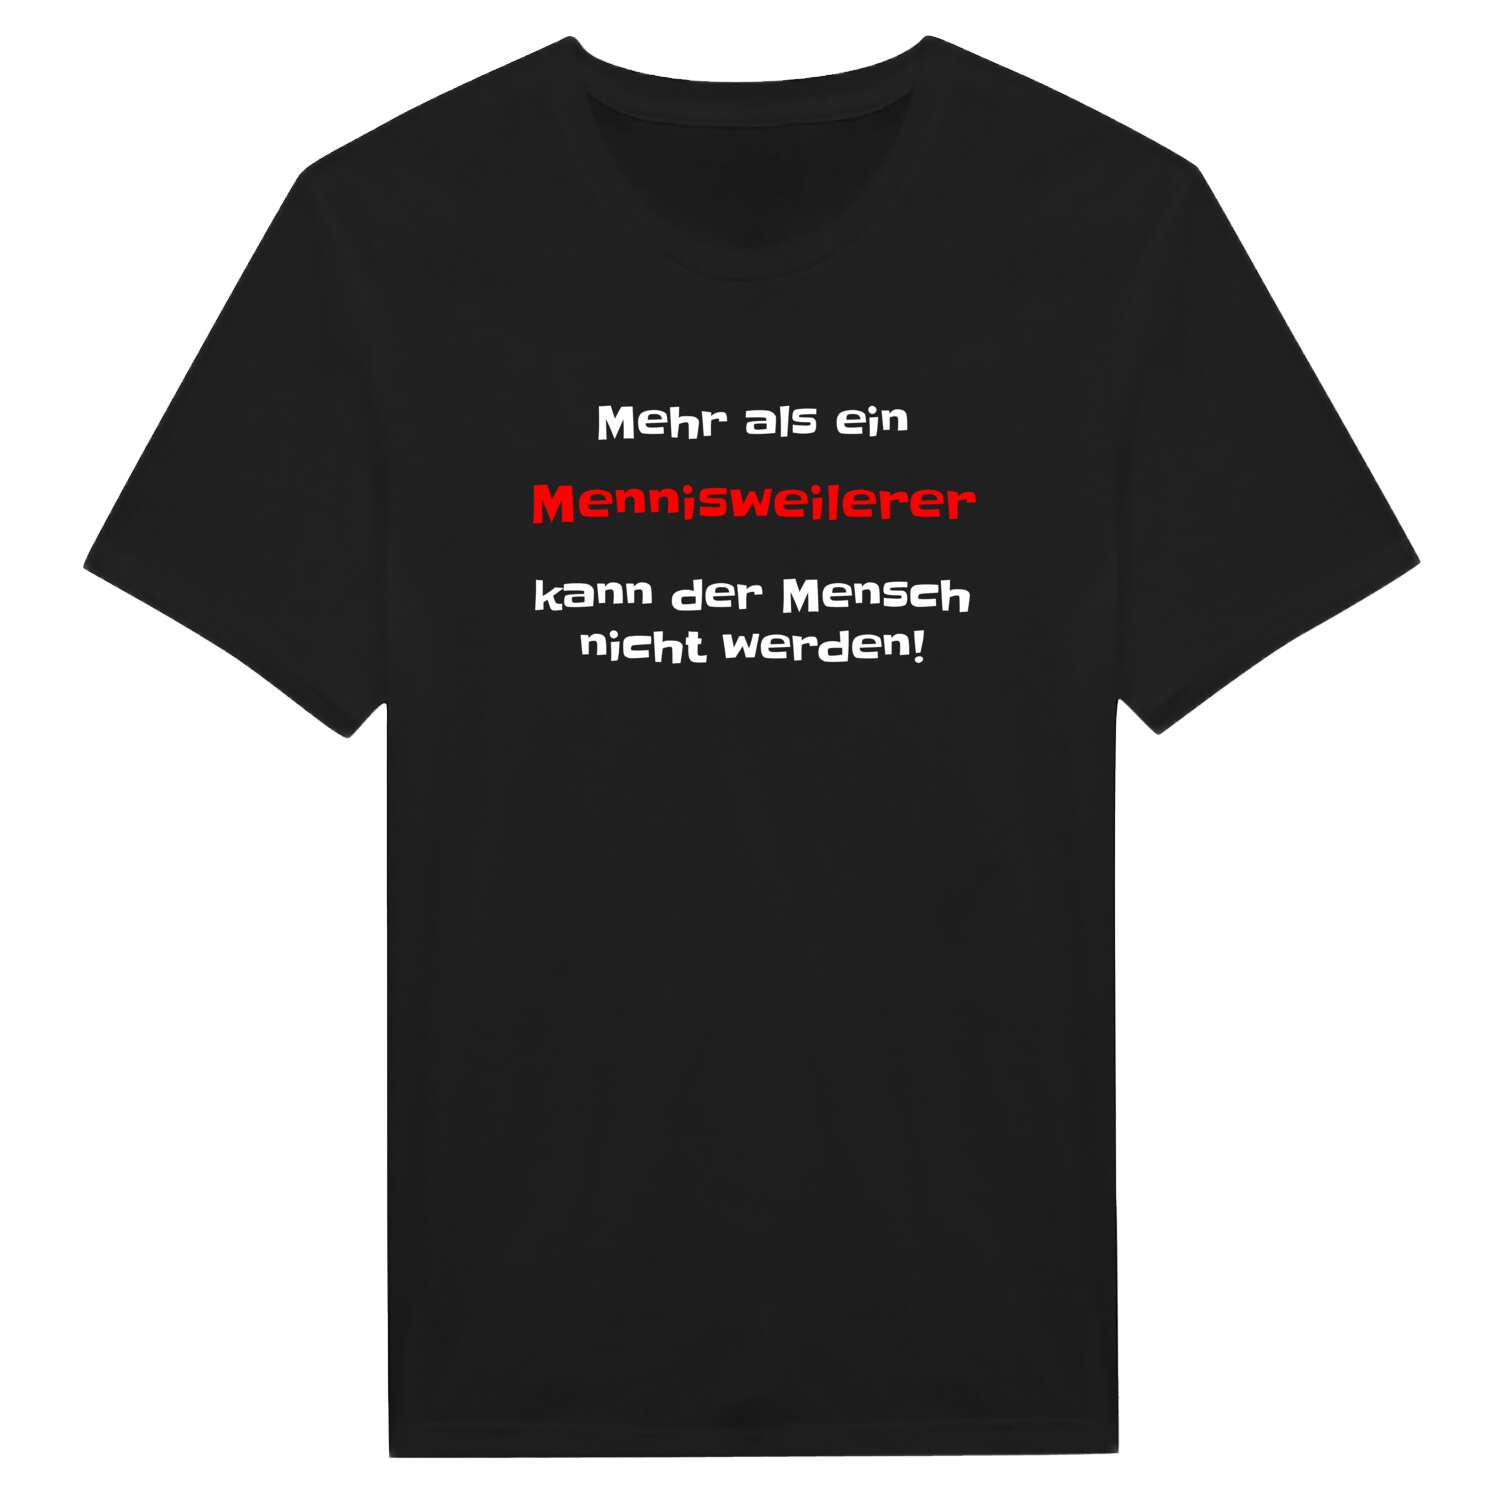 Mennisweiler T-Shirt »Mehr als ein«